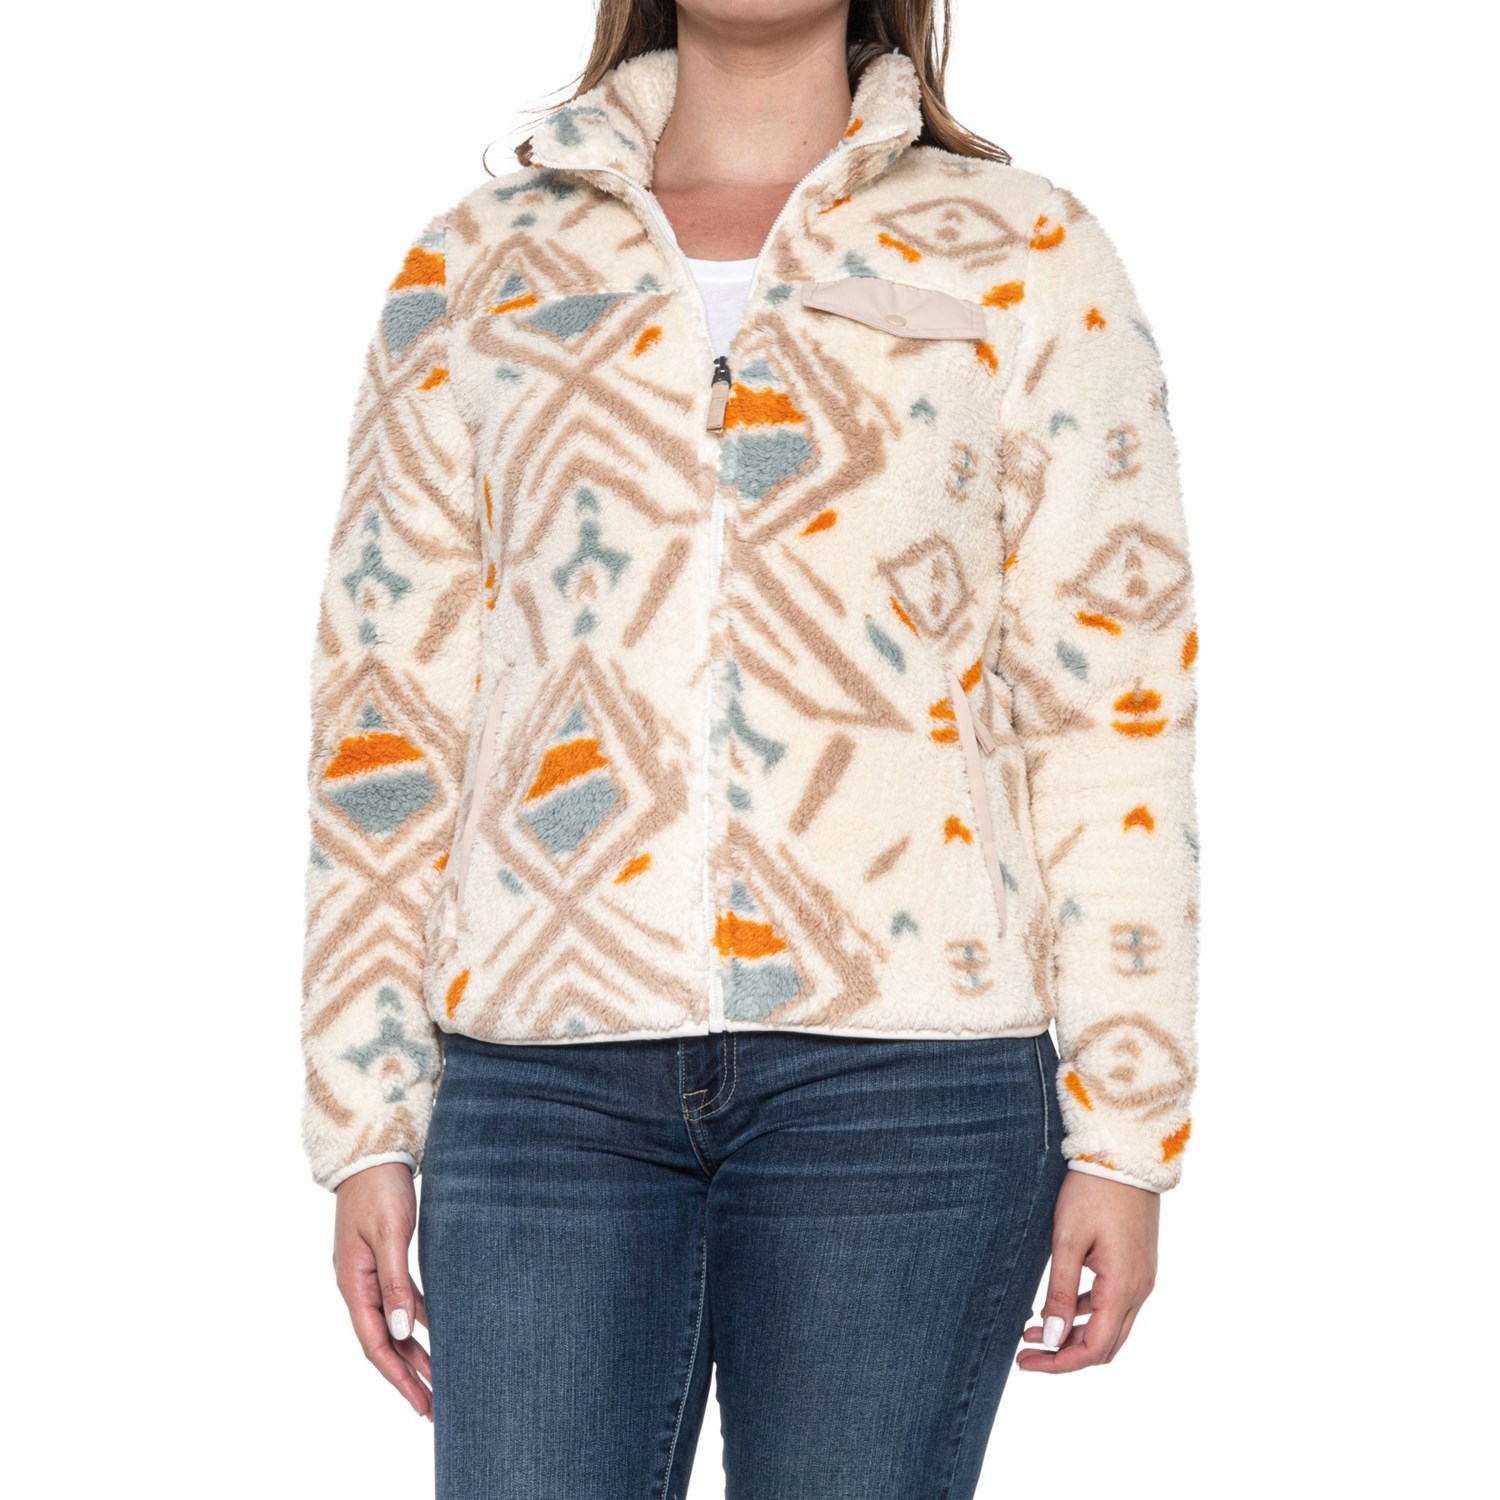 Gerry Terra Printed High-Pile Fleece Jacket - Full Zip - Save 64%